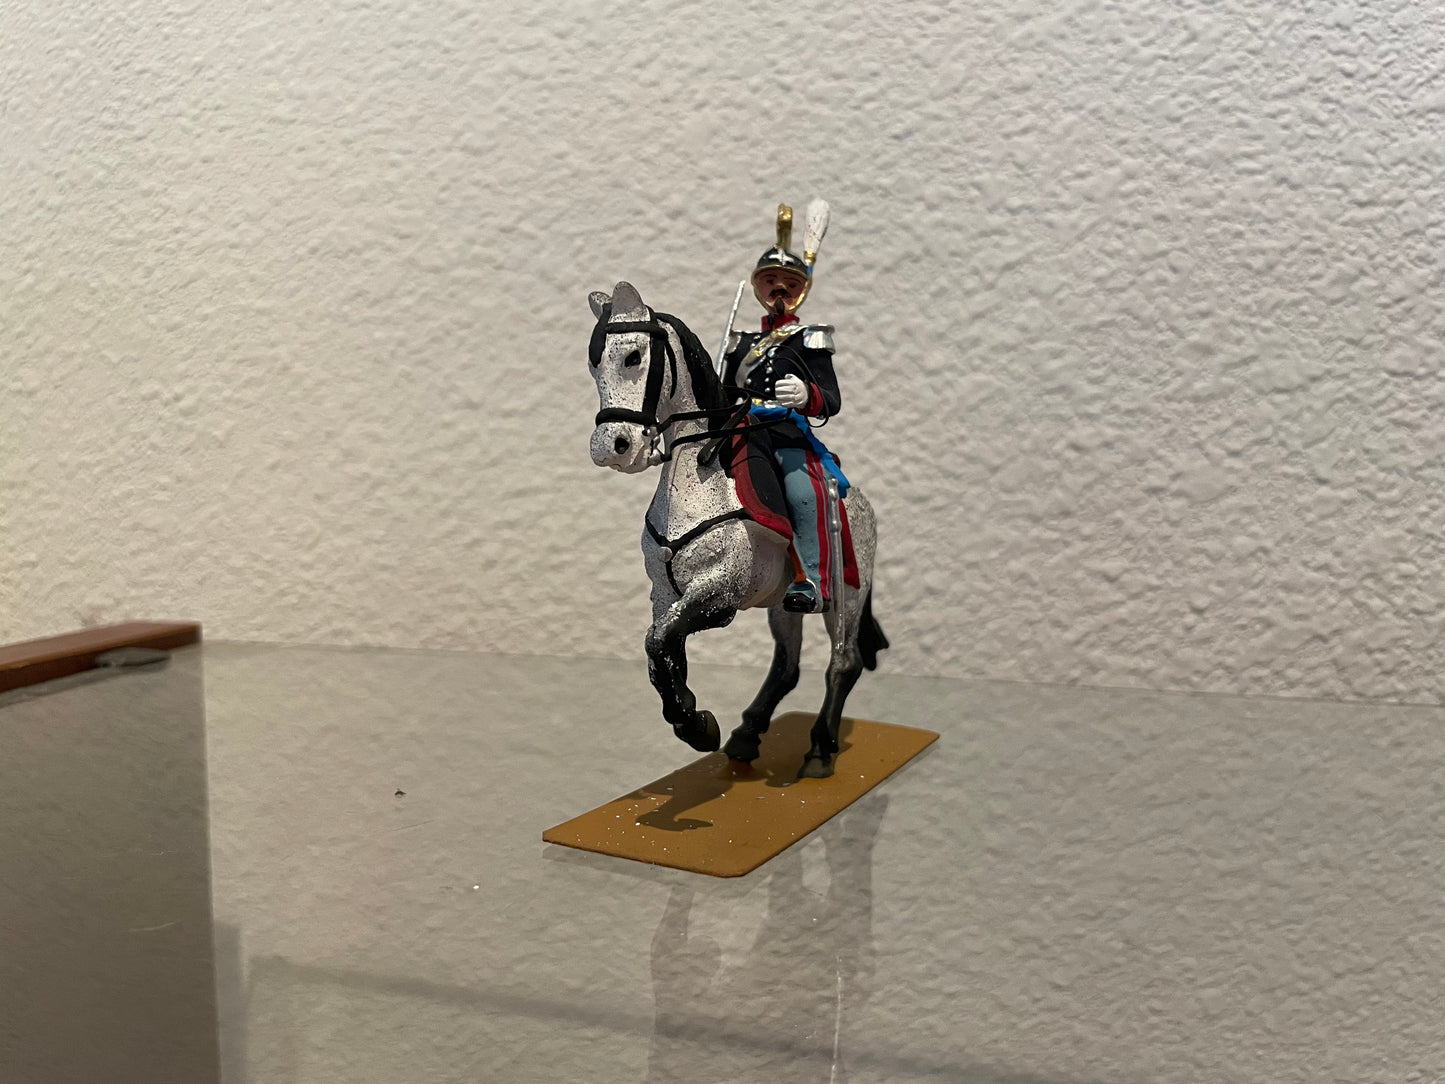 Toy soldier swordsmen on horseback